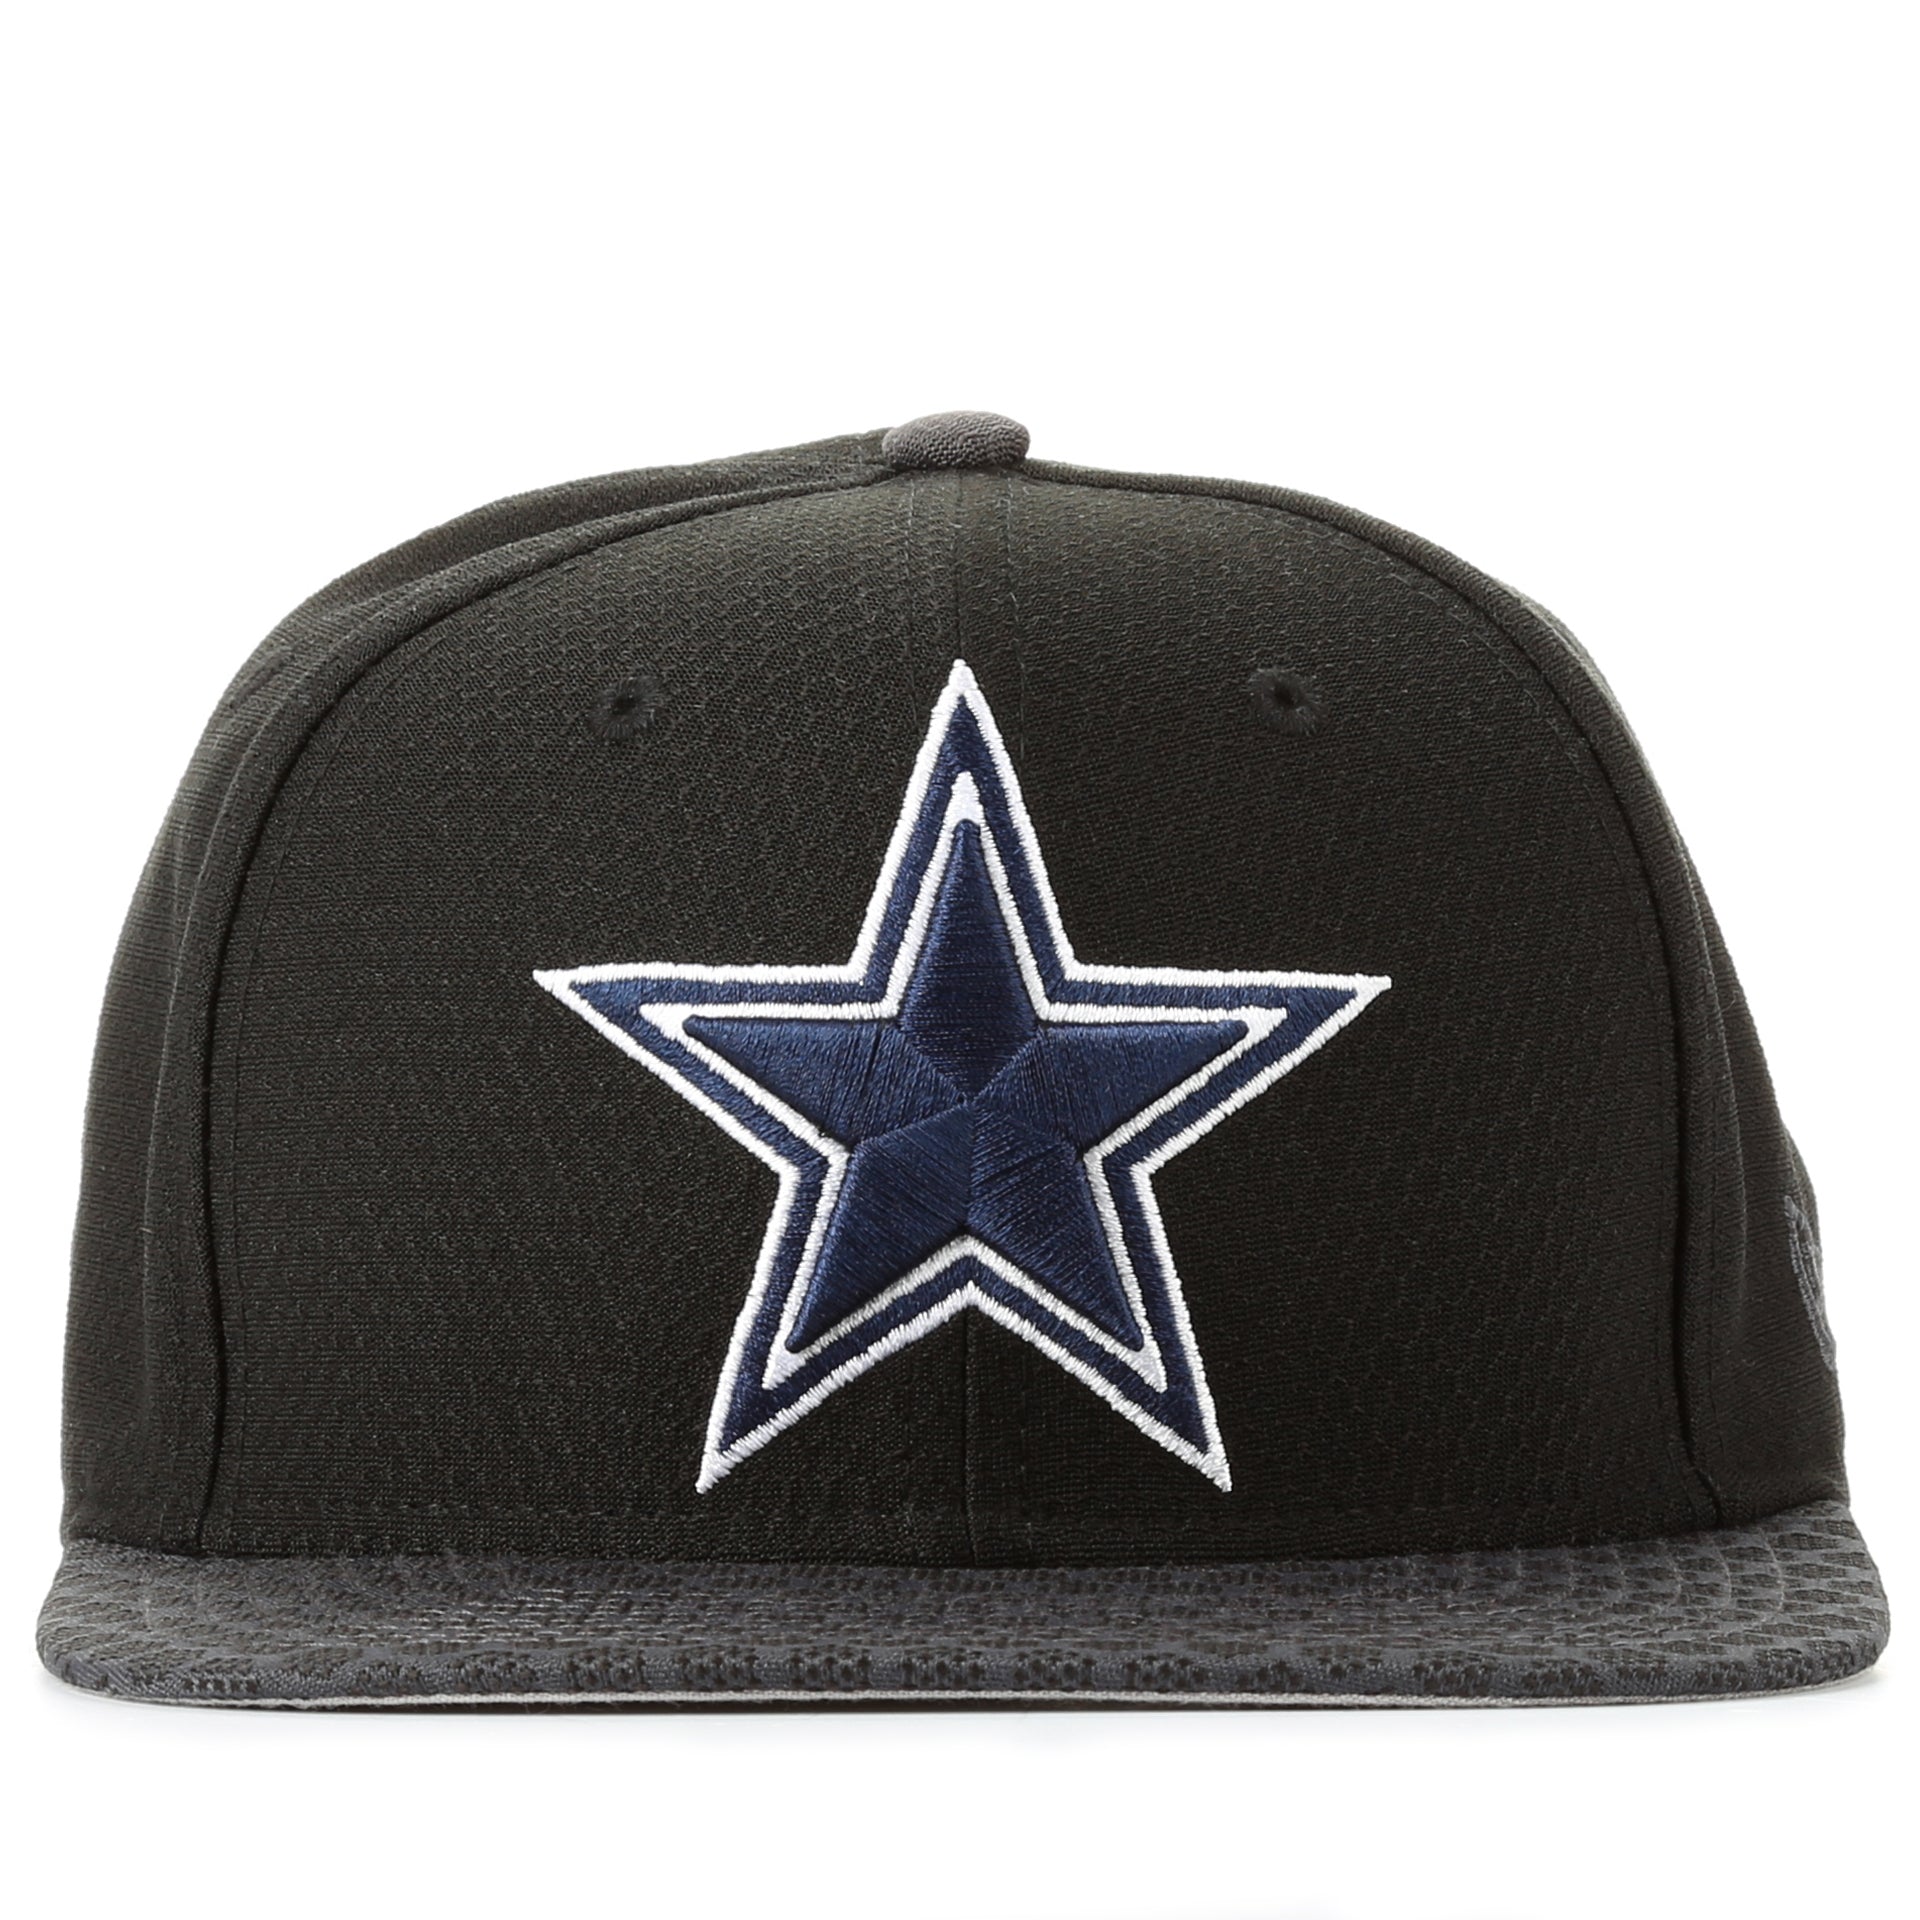 Dallas Cowboys Hats, Cowboys Snapbacks, Sideline Caps